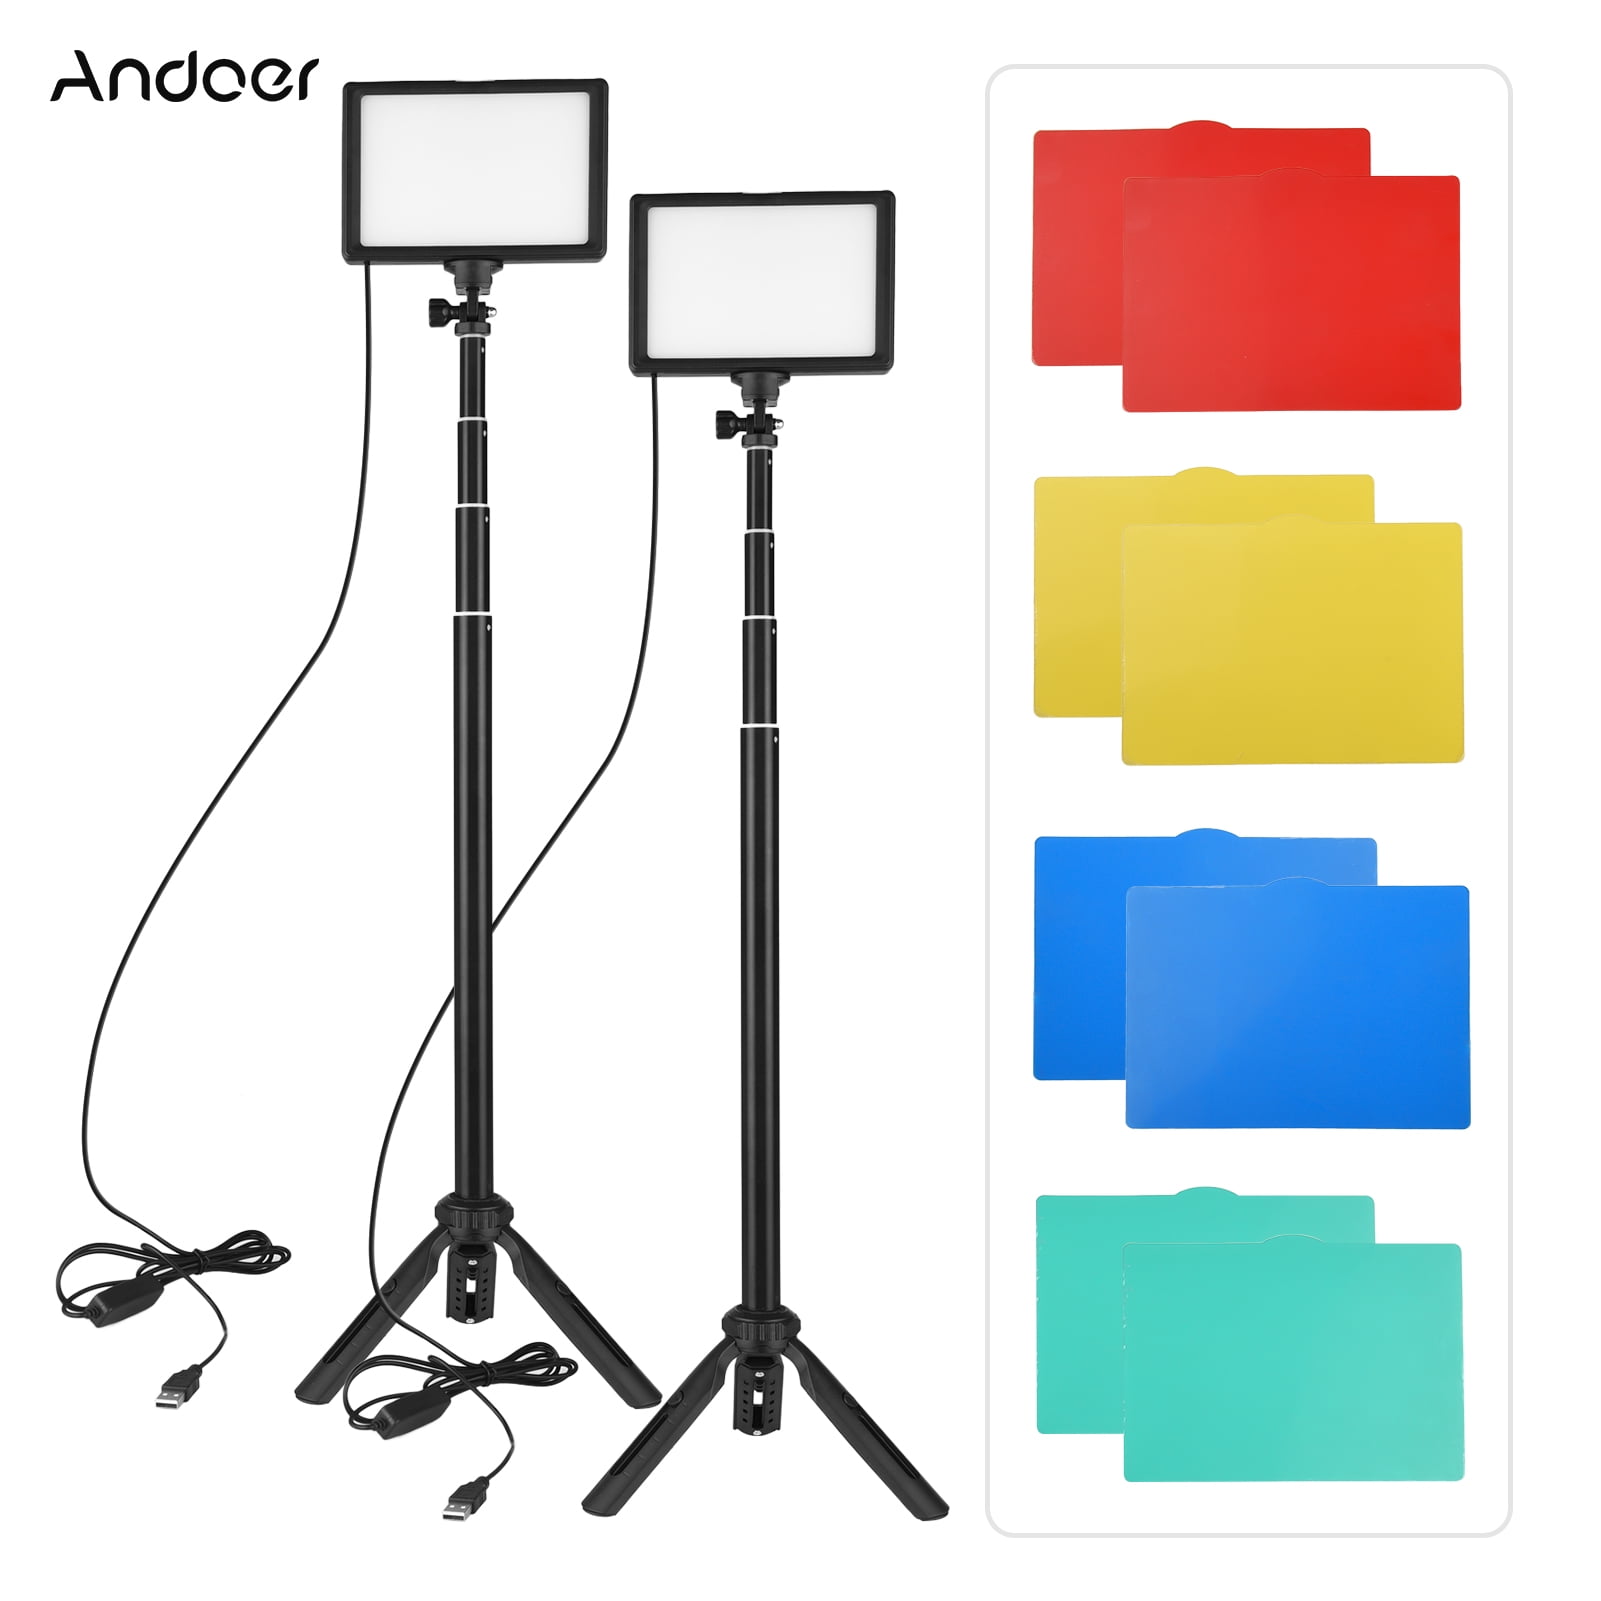 Andoer Kit dÉclairage de Photographie Portable Dimmable 3200K-5600K USB LED Lumière Vidéo Video Light avec Trépied Réglable Filtres de Couleur et Support de Chaussure Froide pour Éclairage Vidéo 